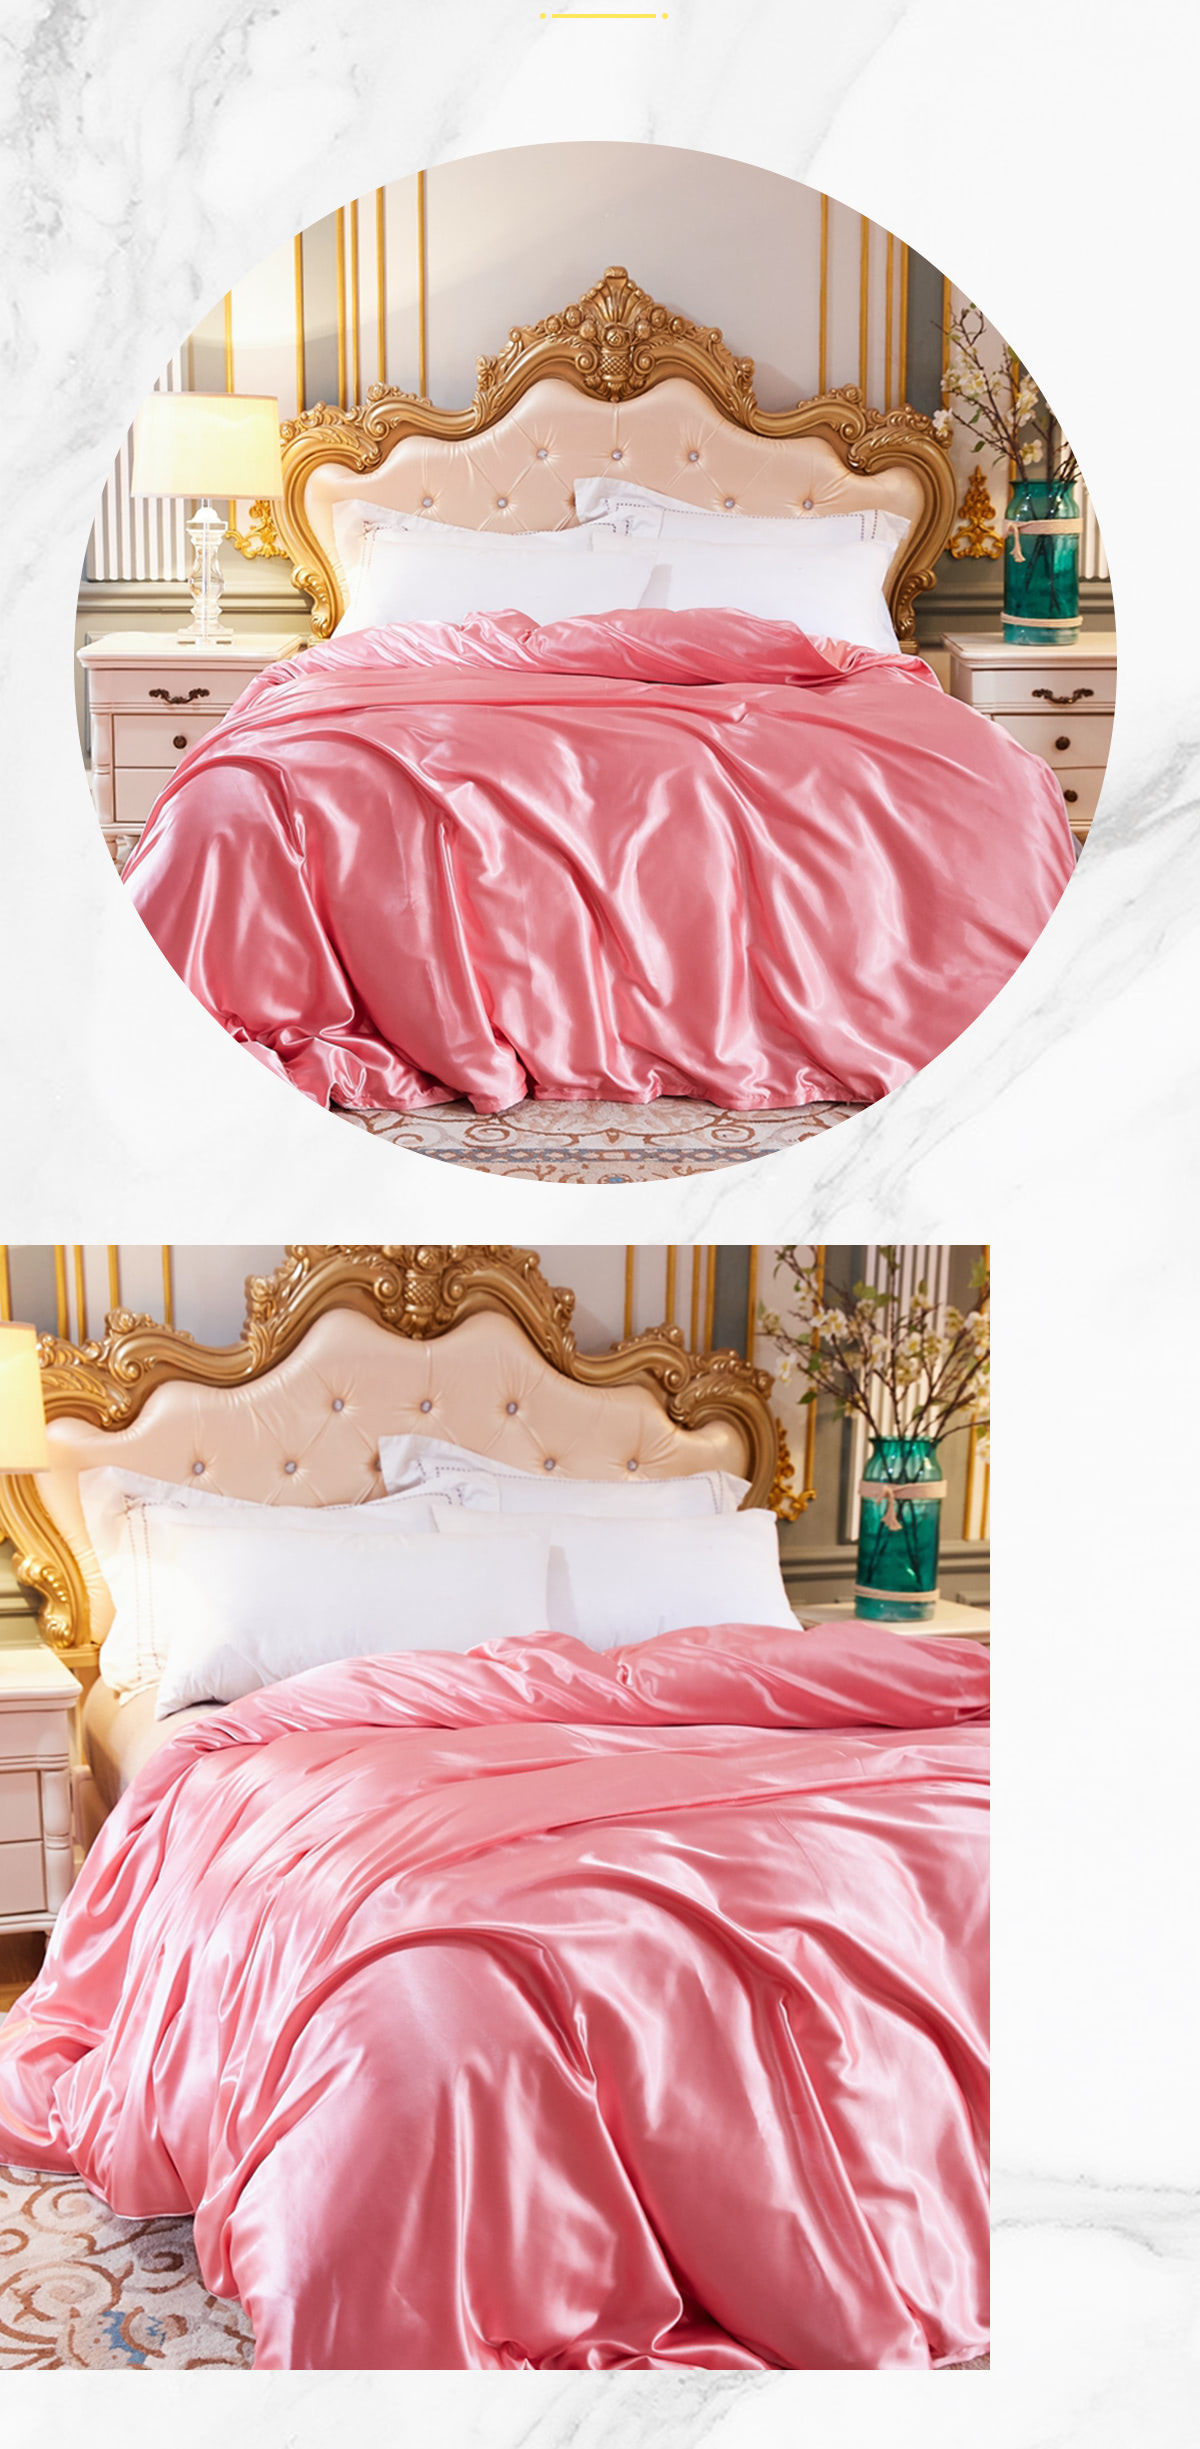 Ultra-Soft-Silky-Satin-Bedding-Linen-Duvet-Cover-4-Pcs-Set16.jpg